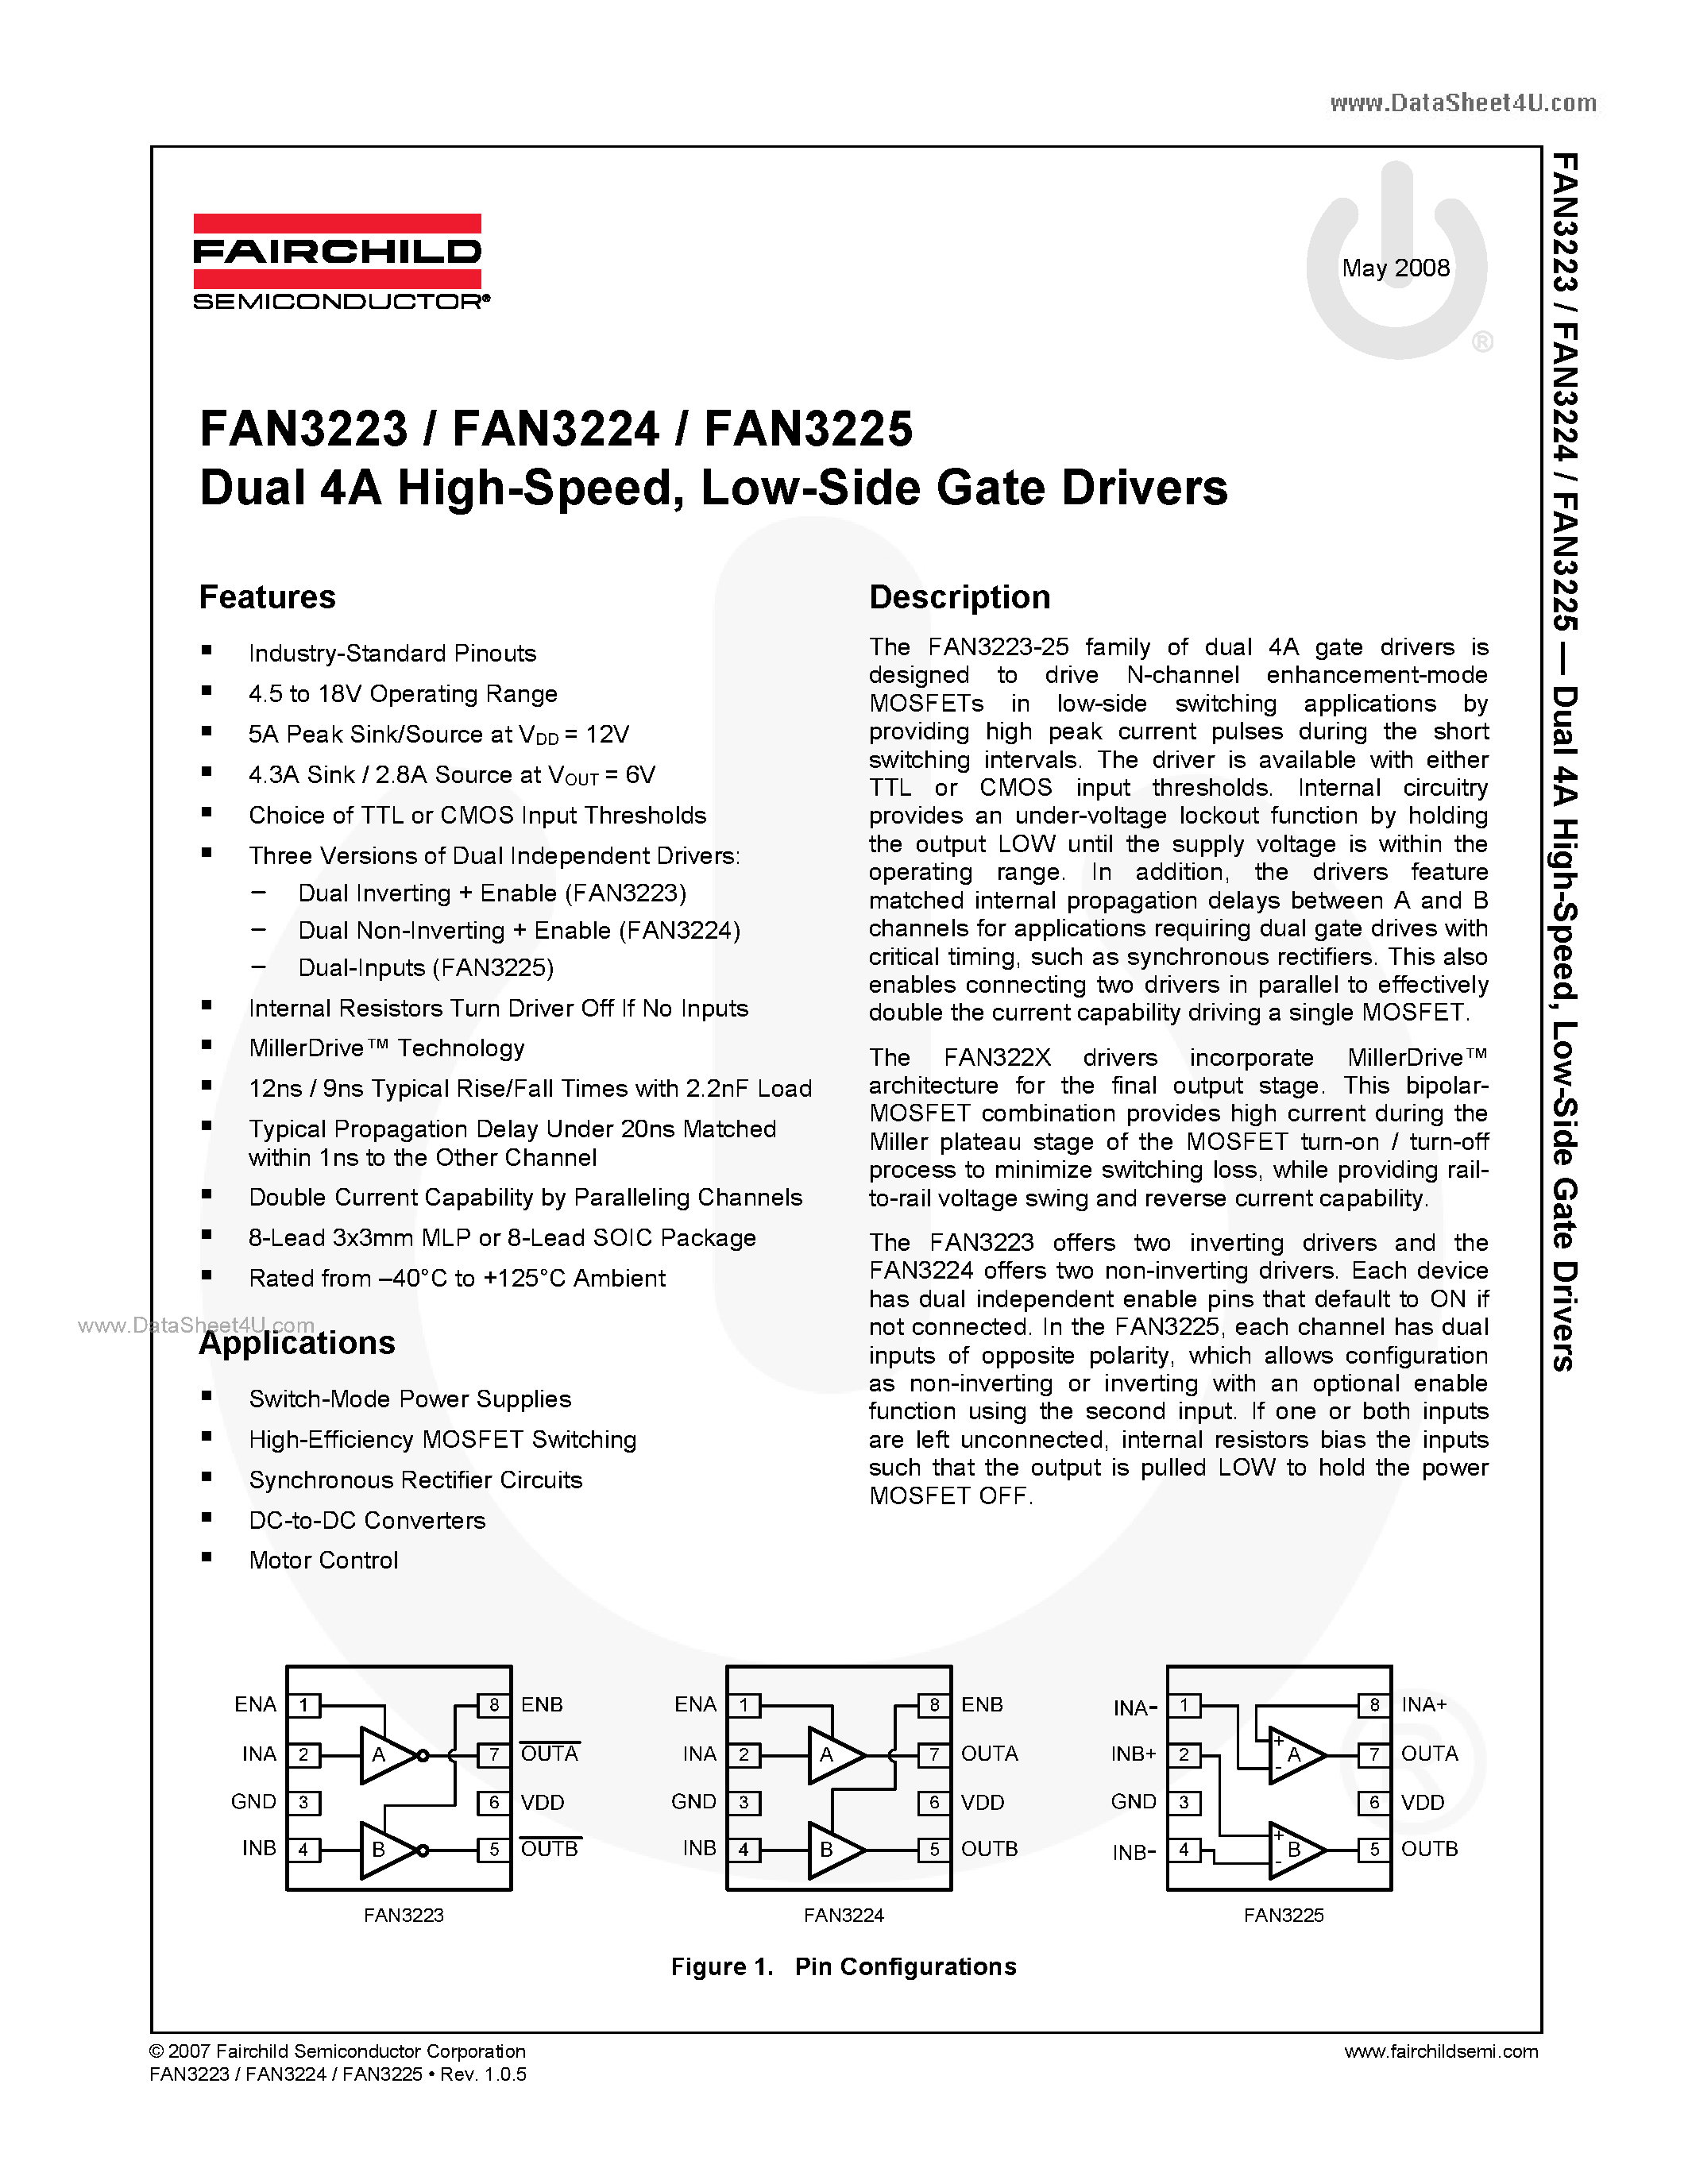 Даташит FAN3223 - (FAN3223 - FAN3225) Low-Side Gate Drivers страница 1